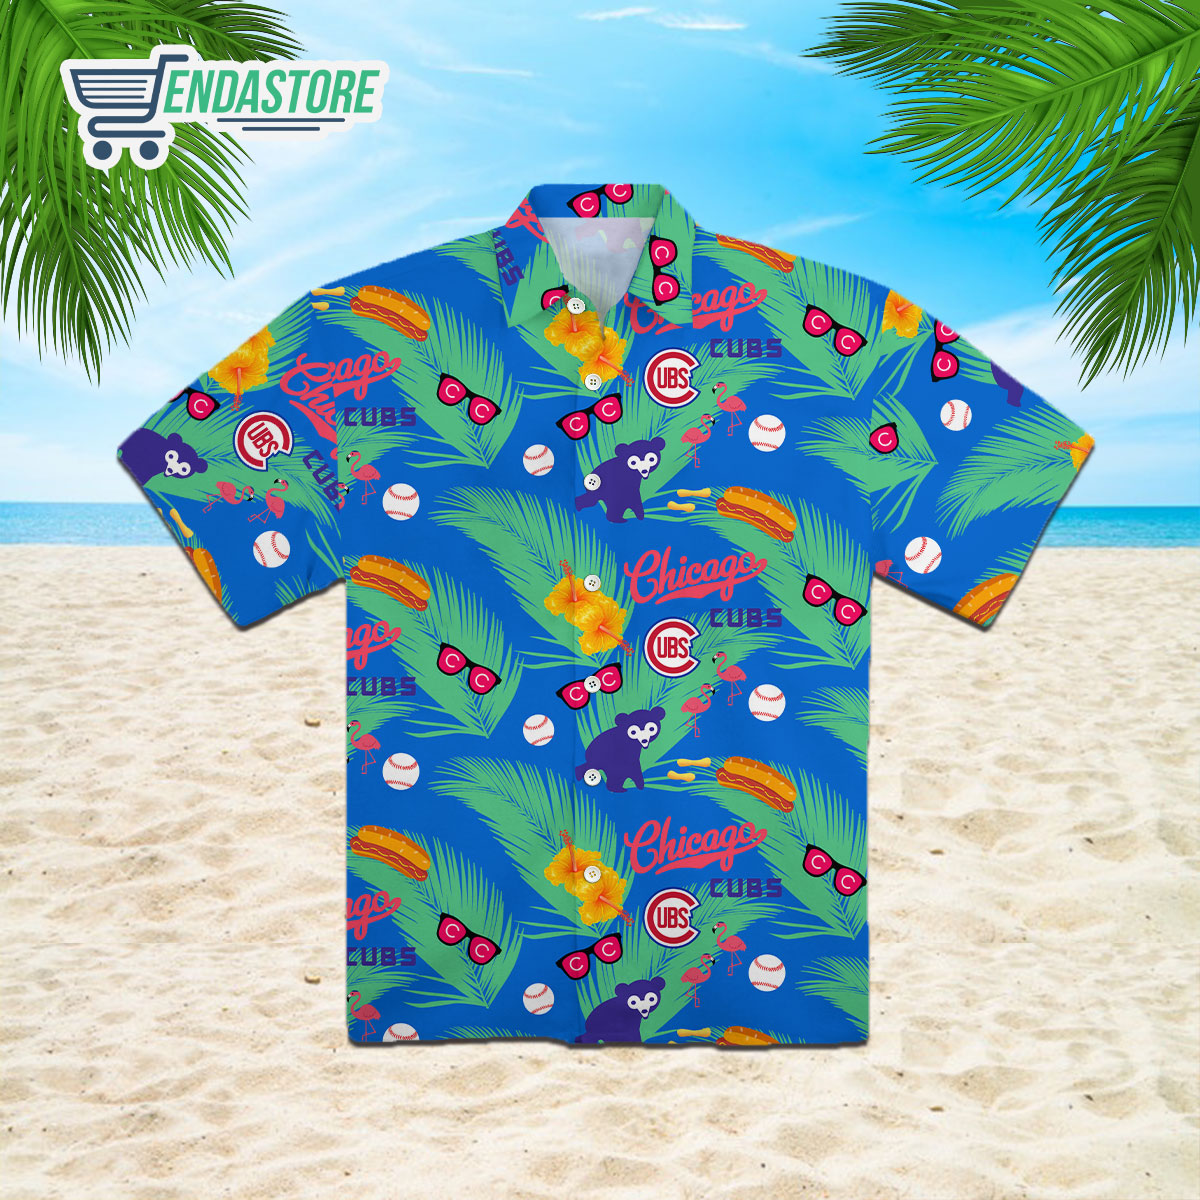 Chicago Cubs Hawaiian Shirt 2023 Giveaway - Rockatee